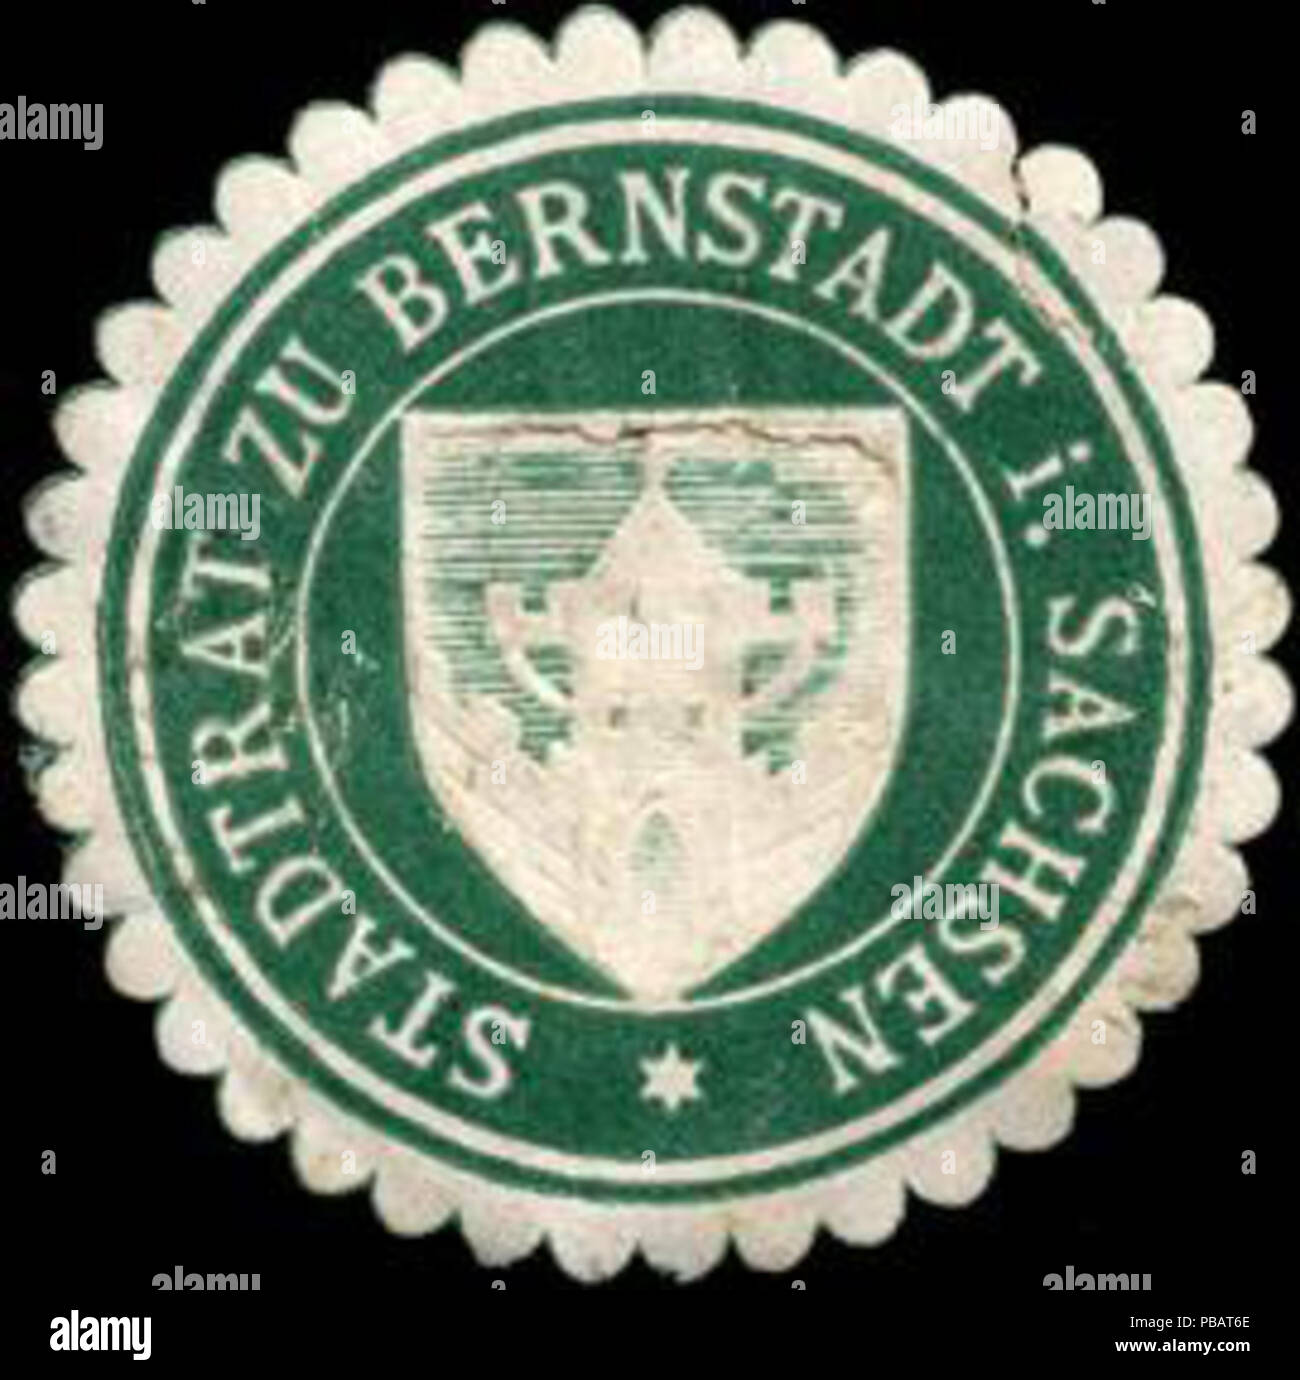 1524 Siegelmarke Stadtrat zu Bernstadt in Sachsen W0220390 Stock Photo